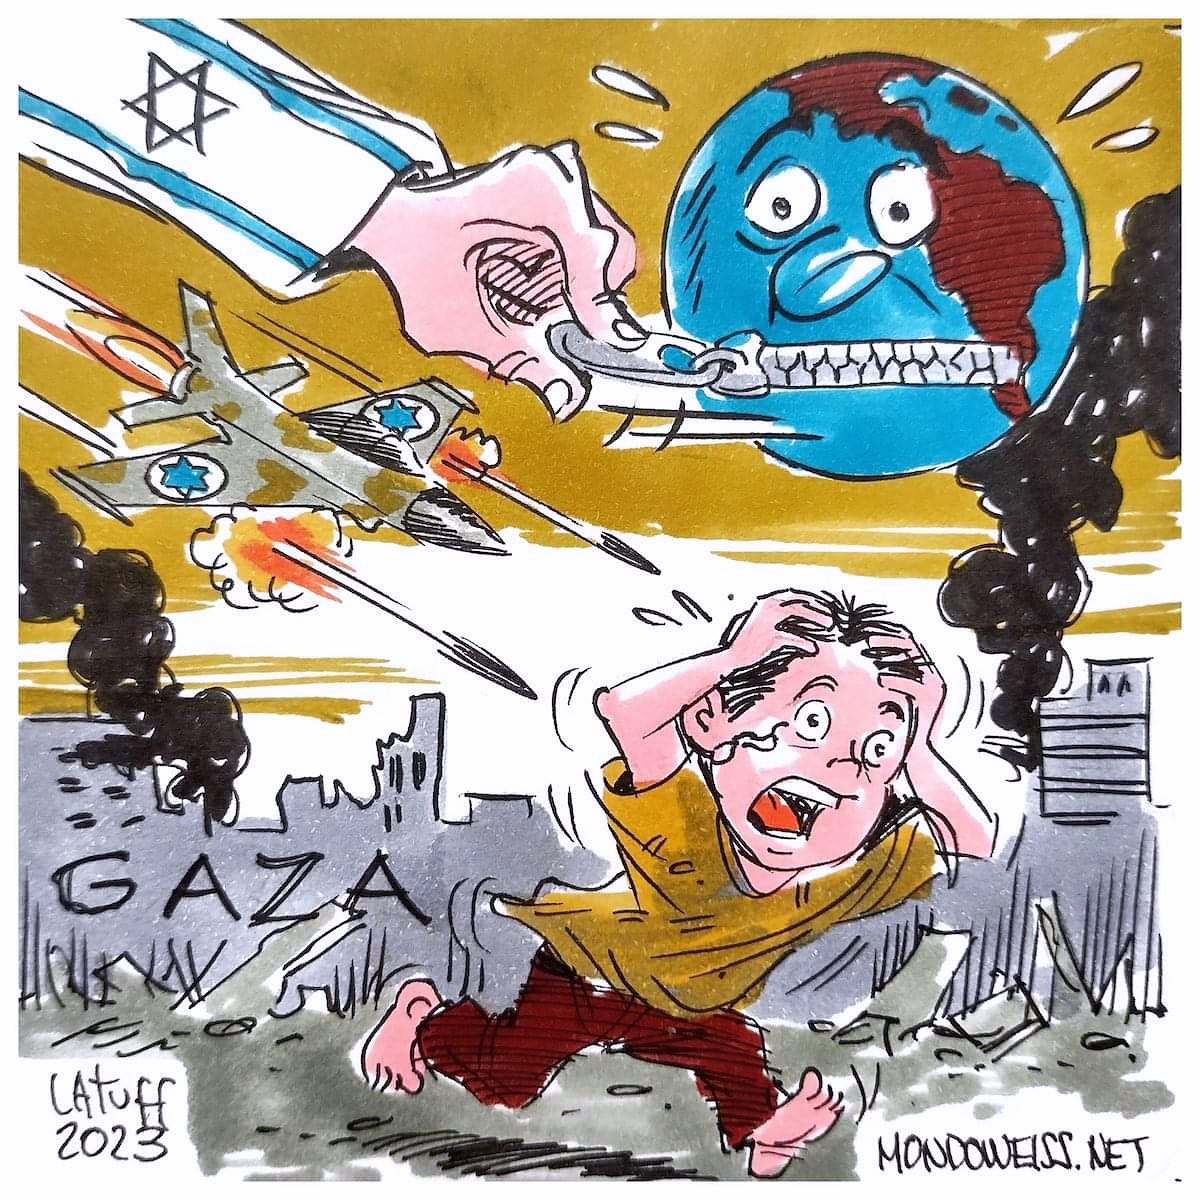 Cartoon by Brazilian Political Cartoonist Carlos Latuff.
#Gaza #Palestine 🇵🇸 #GazaUnderAttack #GazaGenocide #SaveGaza #StopArmingIsrael #SilenceIsComplicity #BDS #ICC #SavePalestinianChildren #PalestineLivesMatter #EndApartheid #EndGazaSiege #EndIsraeliOccupation #FreePalestine🇵🇸